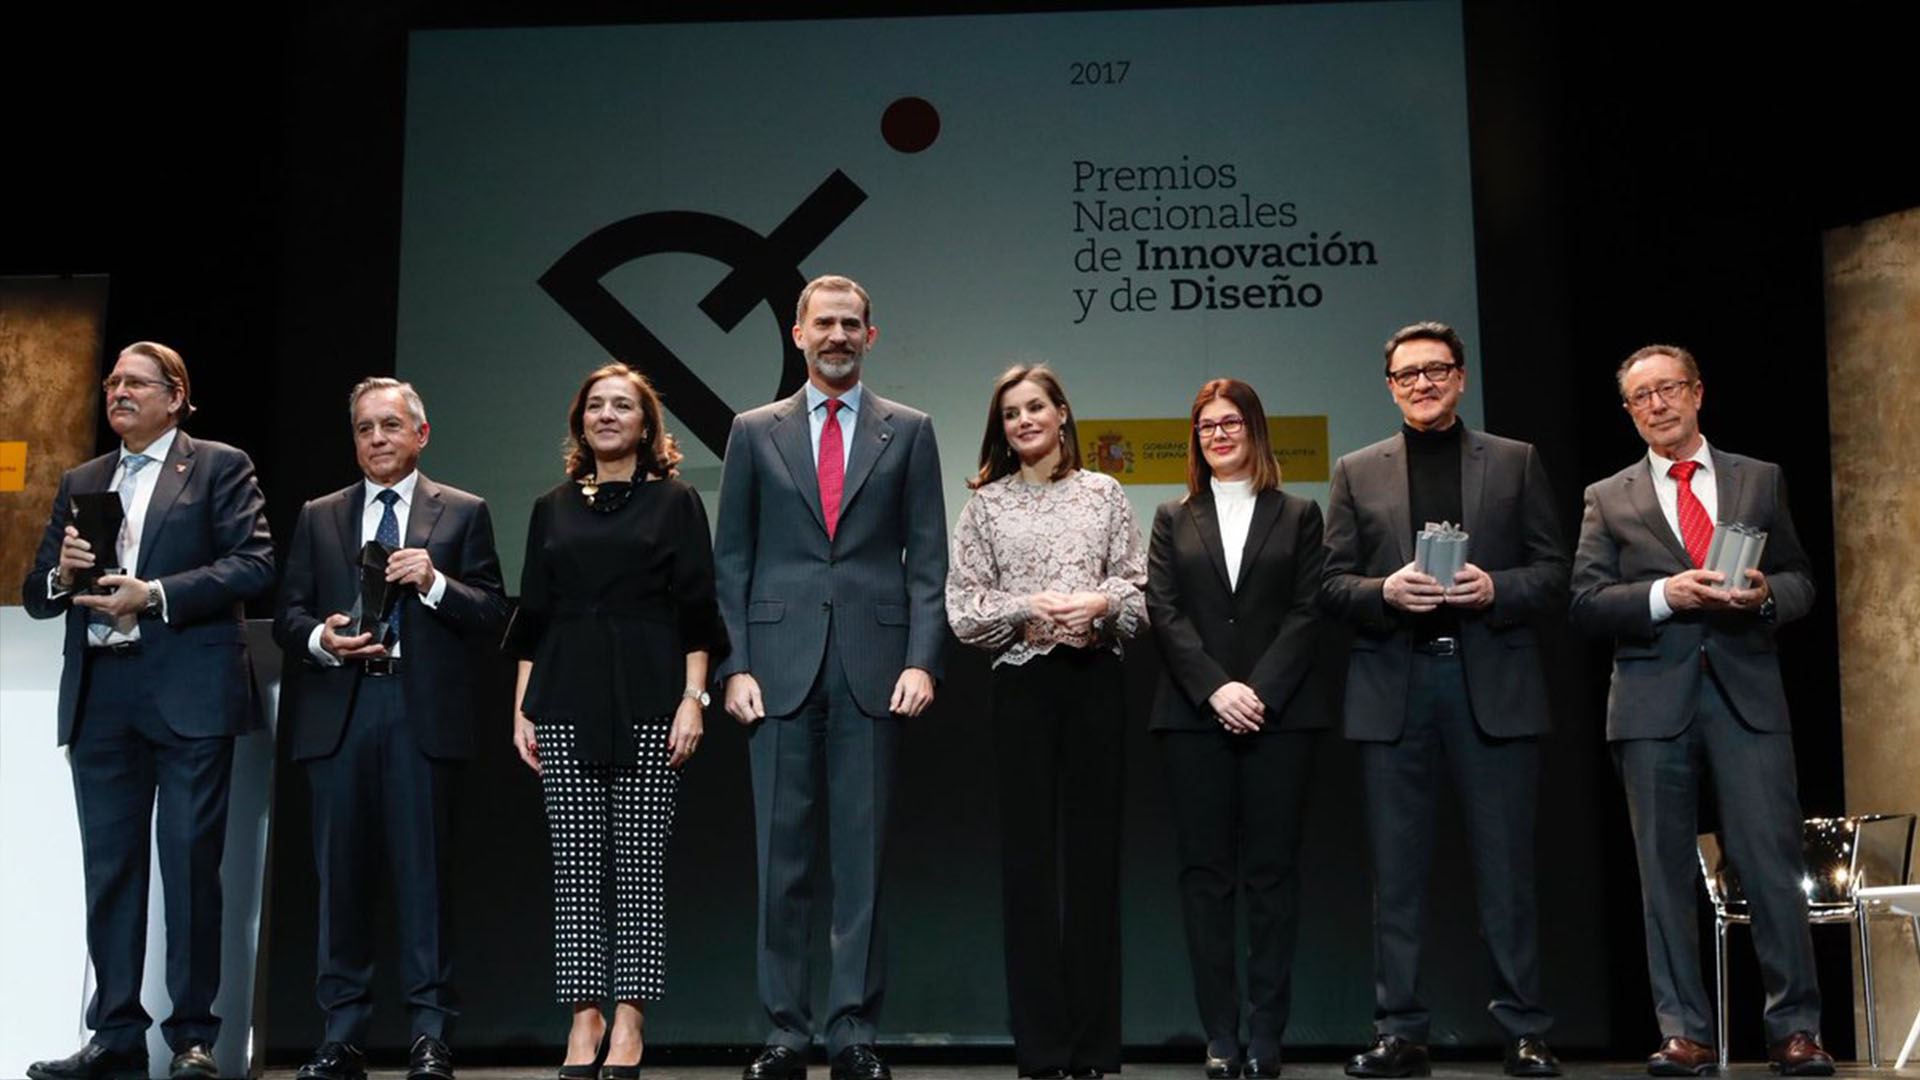 Antonio Muñoz Beraza y Manuel Estrada, Premios Nacionales de Innovación y Diseño 2017